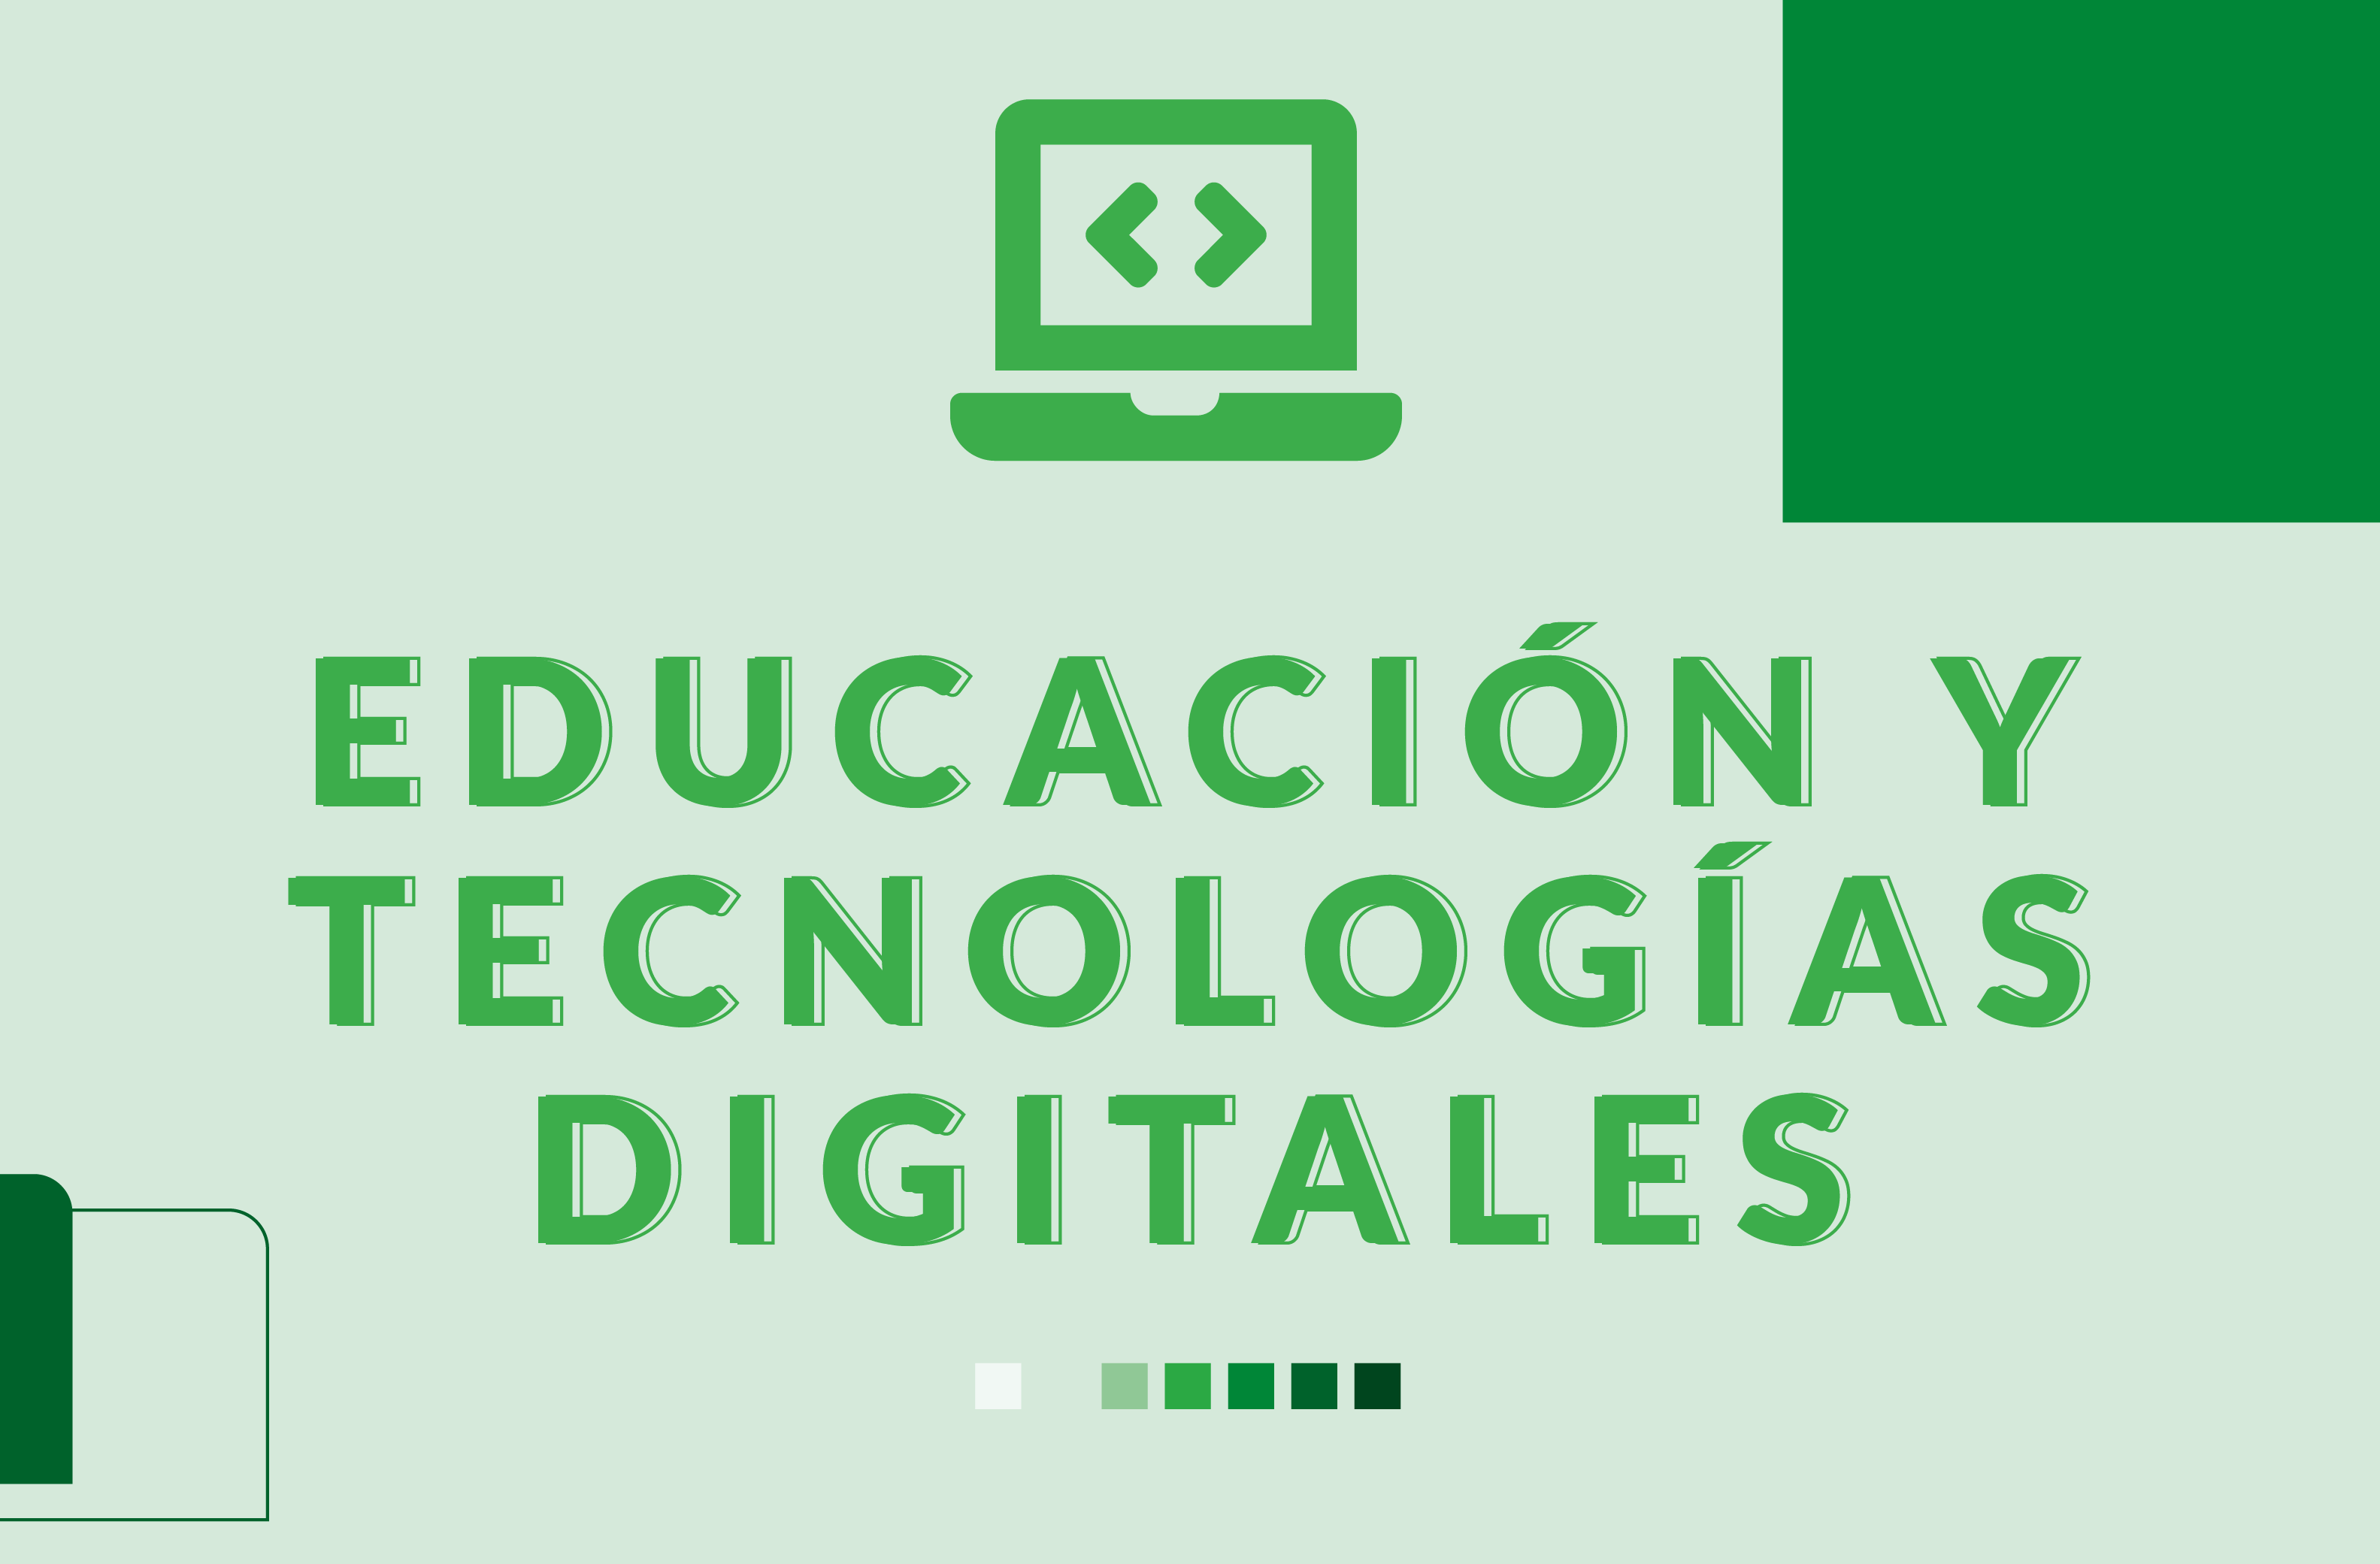  Educación y tecnologías digitales